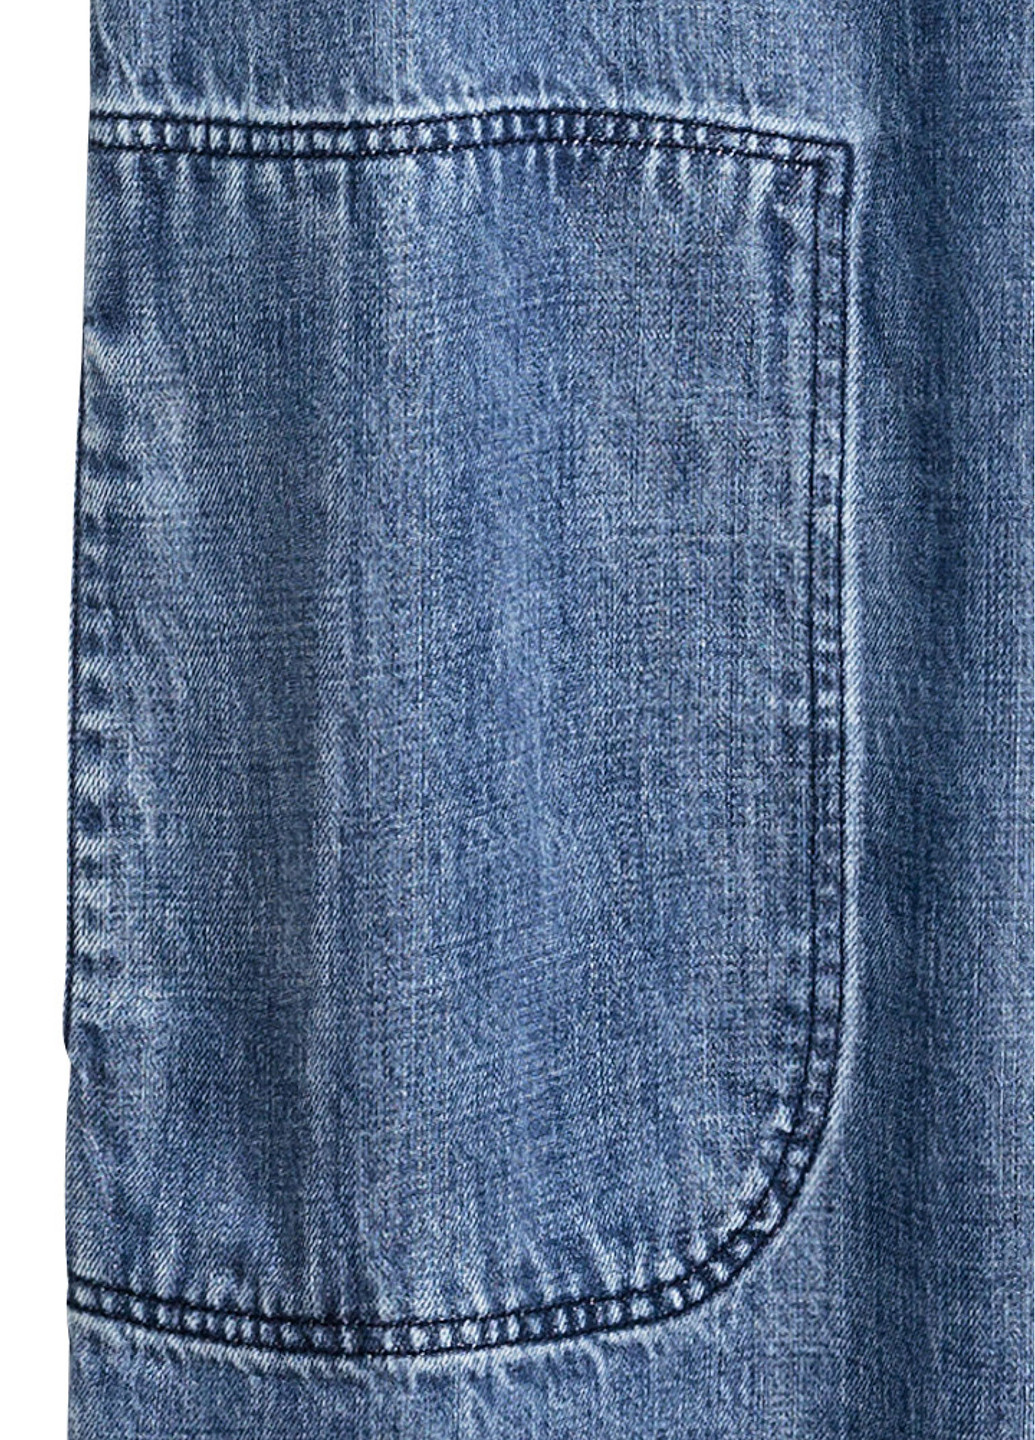 Синее джинсовое платье H&M однотонное